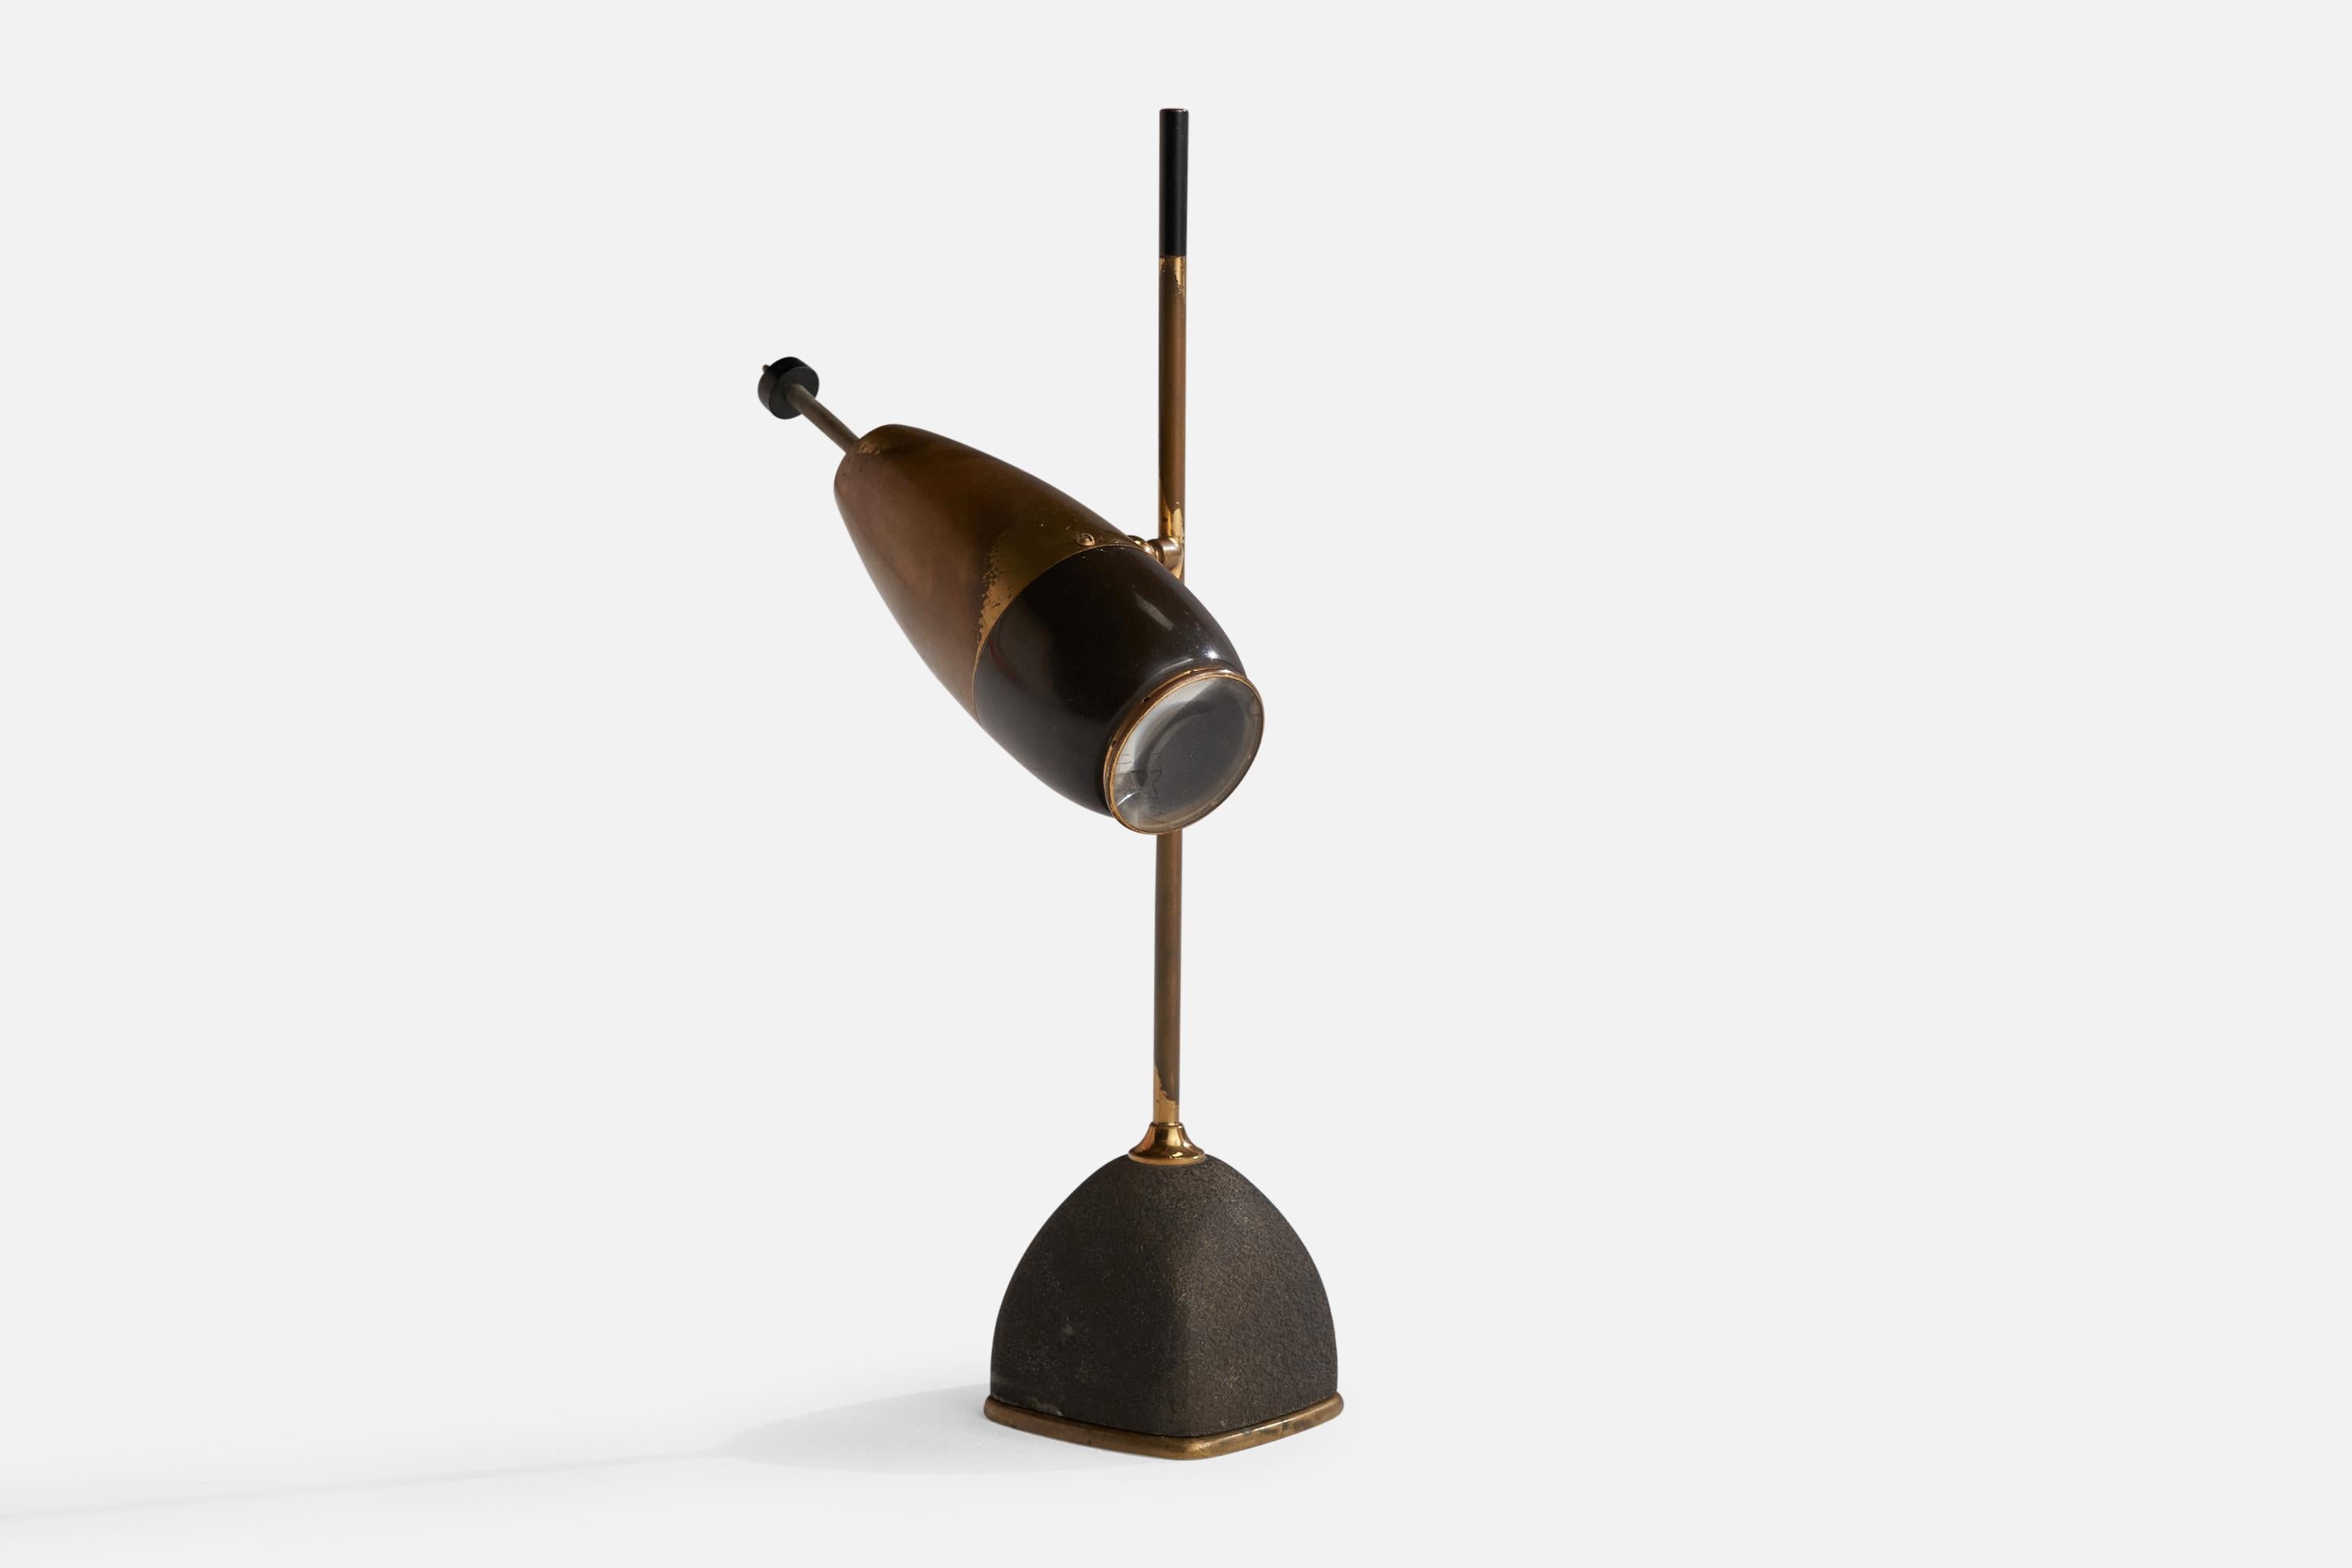 Lampe de table réglable en laiton et métal laqué noir, conçue par Oscar Torlasco et produite par Lumi, Milan, Italie, années 1950.

Dimensions globales (pouces) : 14,5